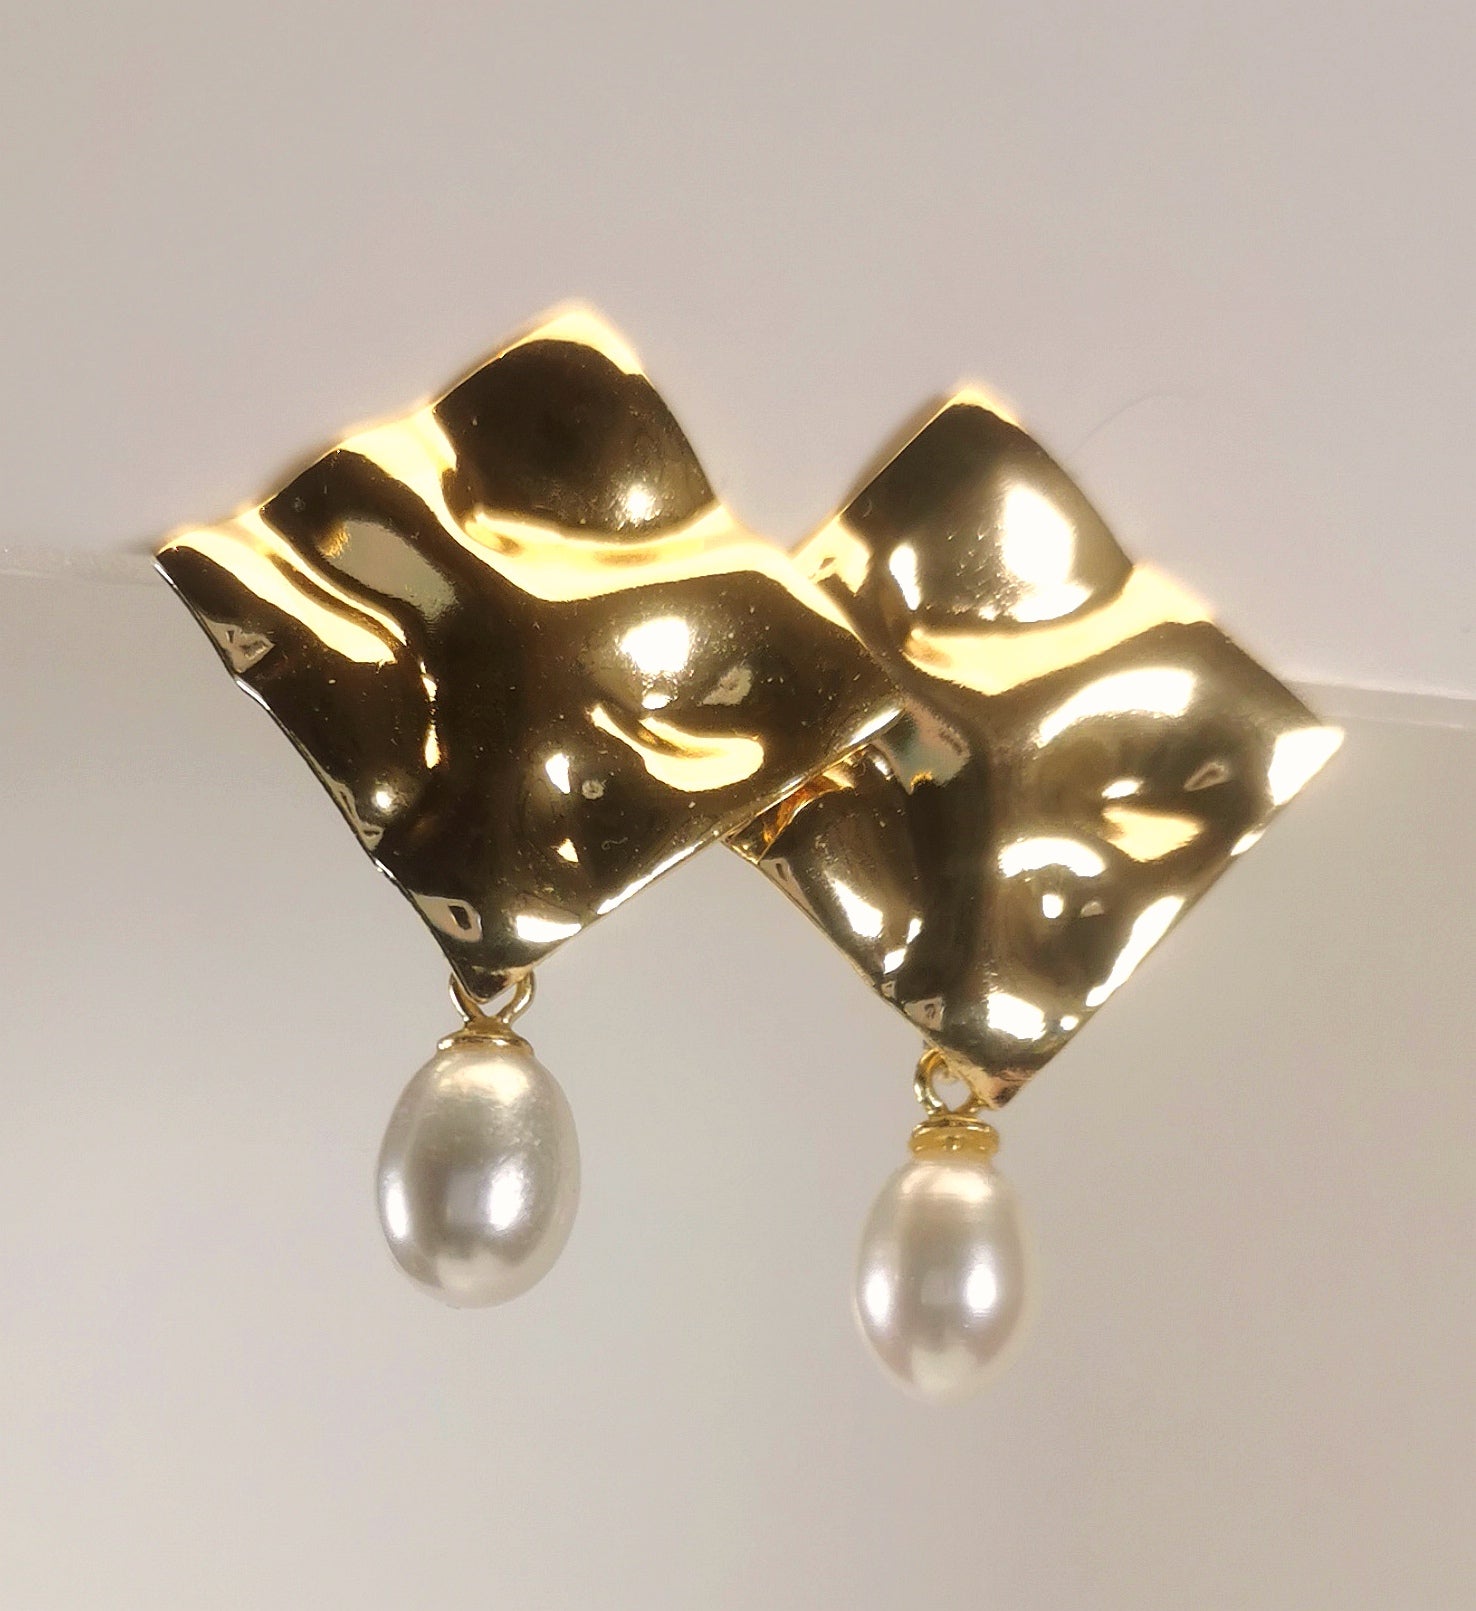 Boucles d'oreilles composées d'un carré martelé de 18mm, plaqué or, sur clou, sous lequel est suspendue une perle blanche , ovale 7-9mm. Présentées posées sur un fond blanc, cote à cote, la boucle de gauche chevauchant celle de droite. Vue  en gros plan de dessus